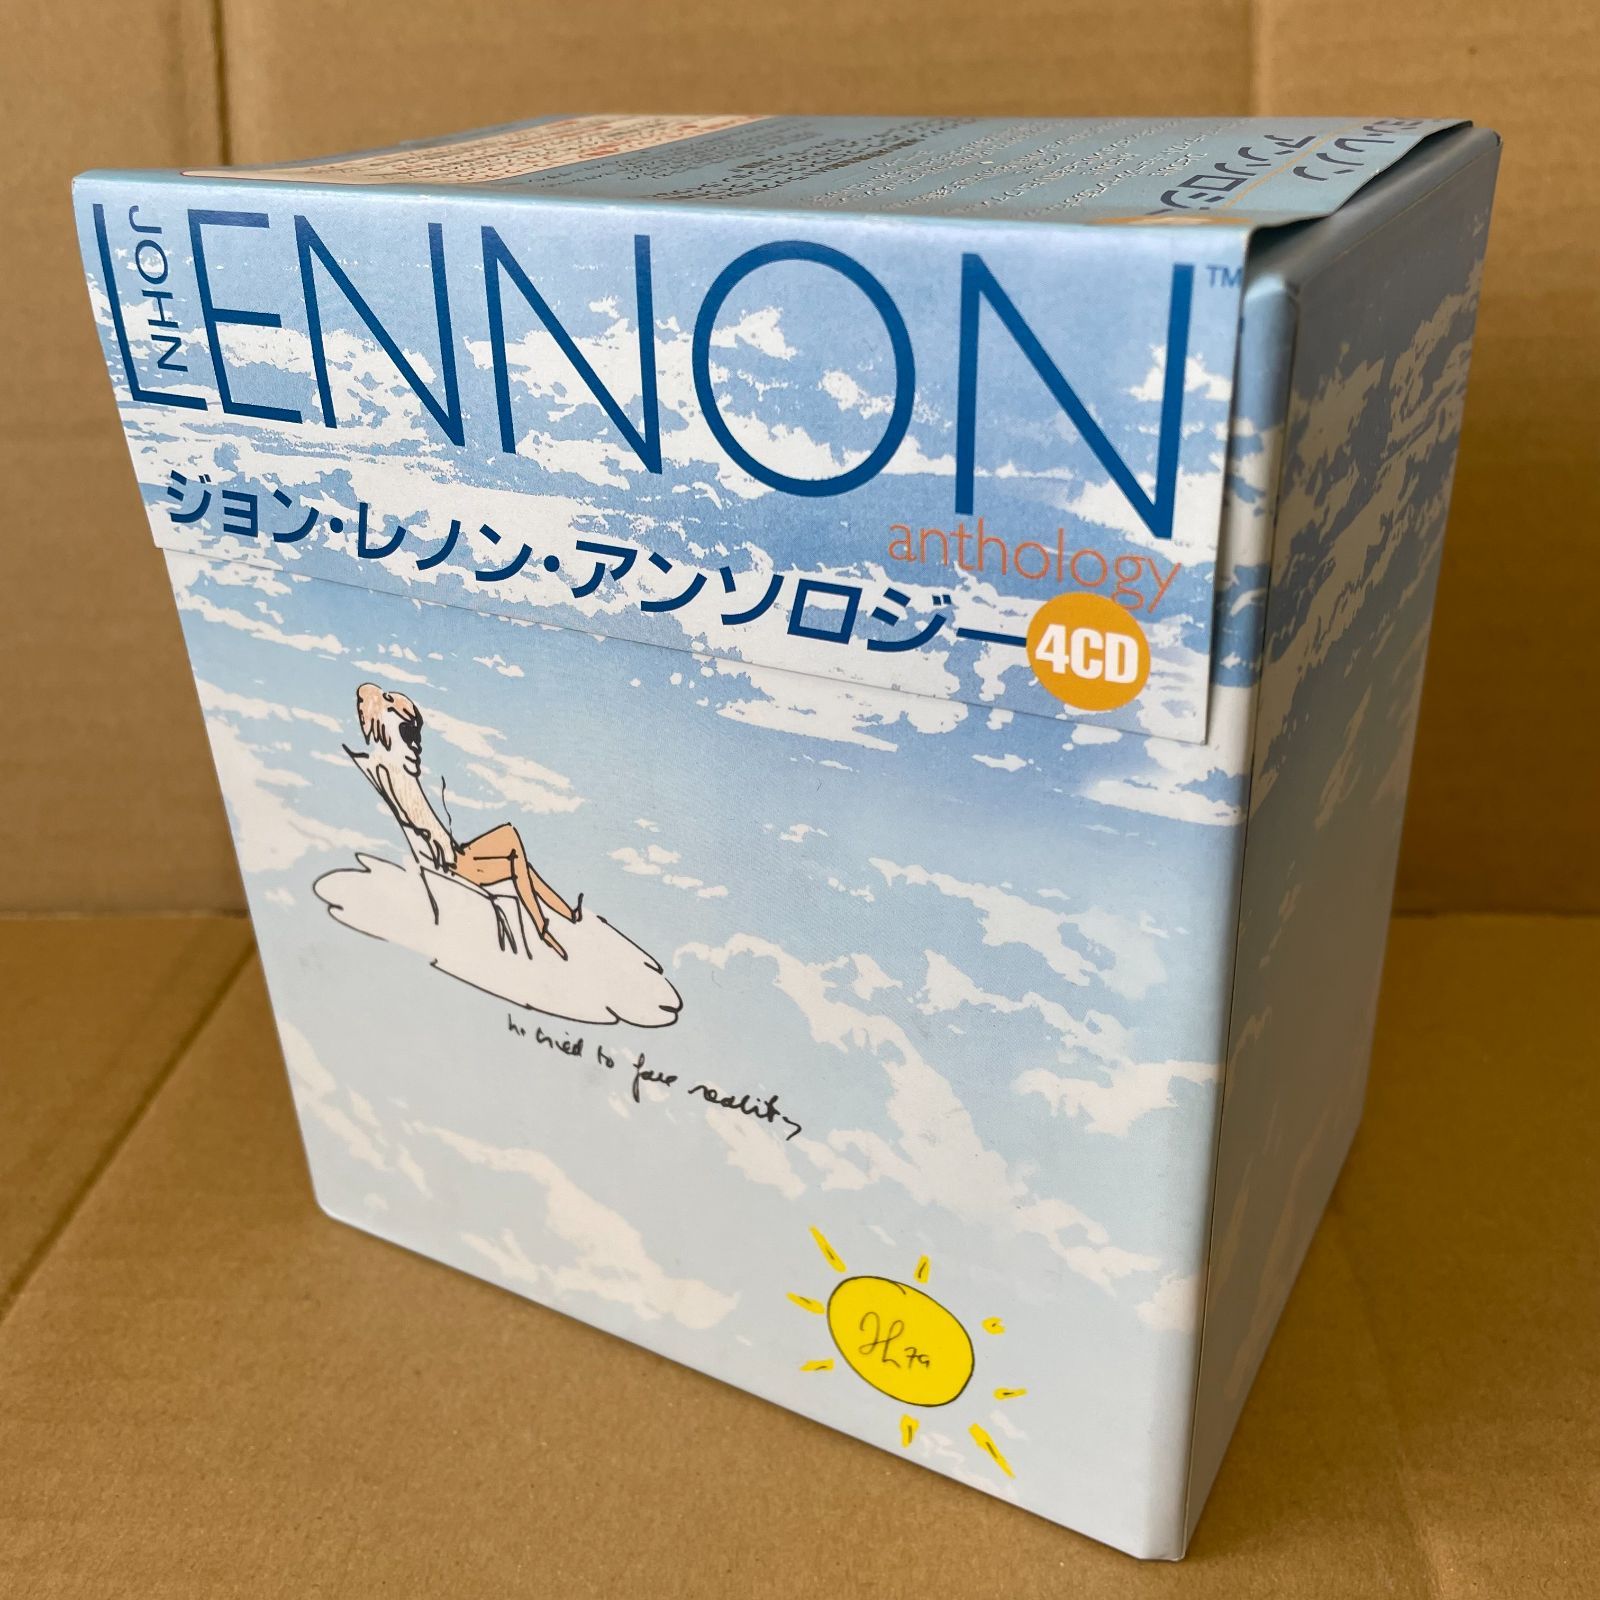 最新入荷 ジョン・レノン 4CD 洋楽 - bestcheerstone.com